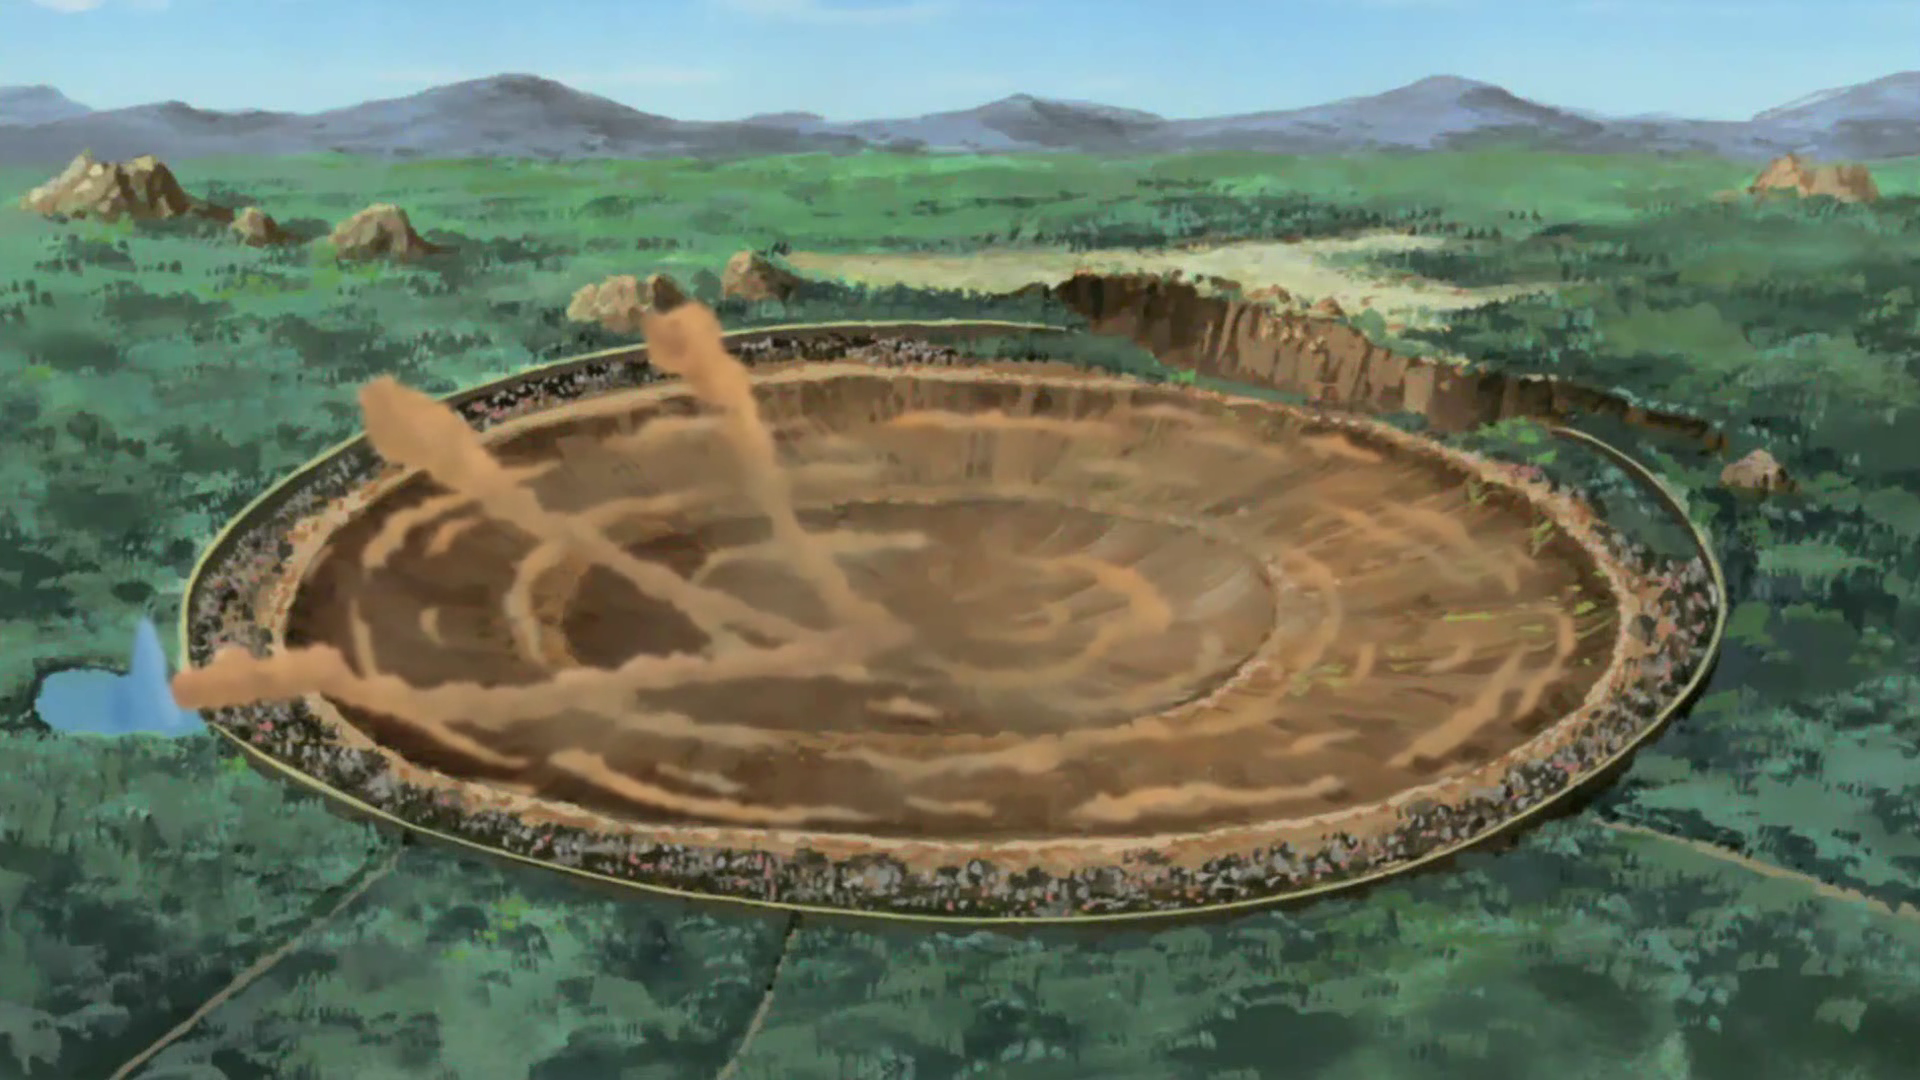 Naruto - Este é o local que inspirou a criação da vila da folha